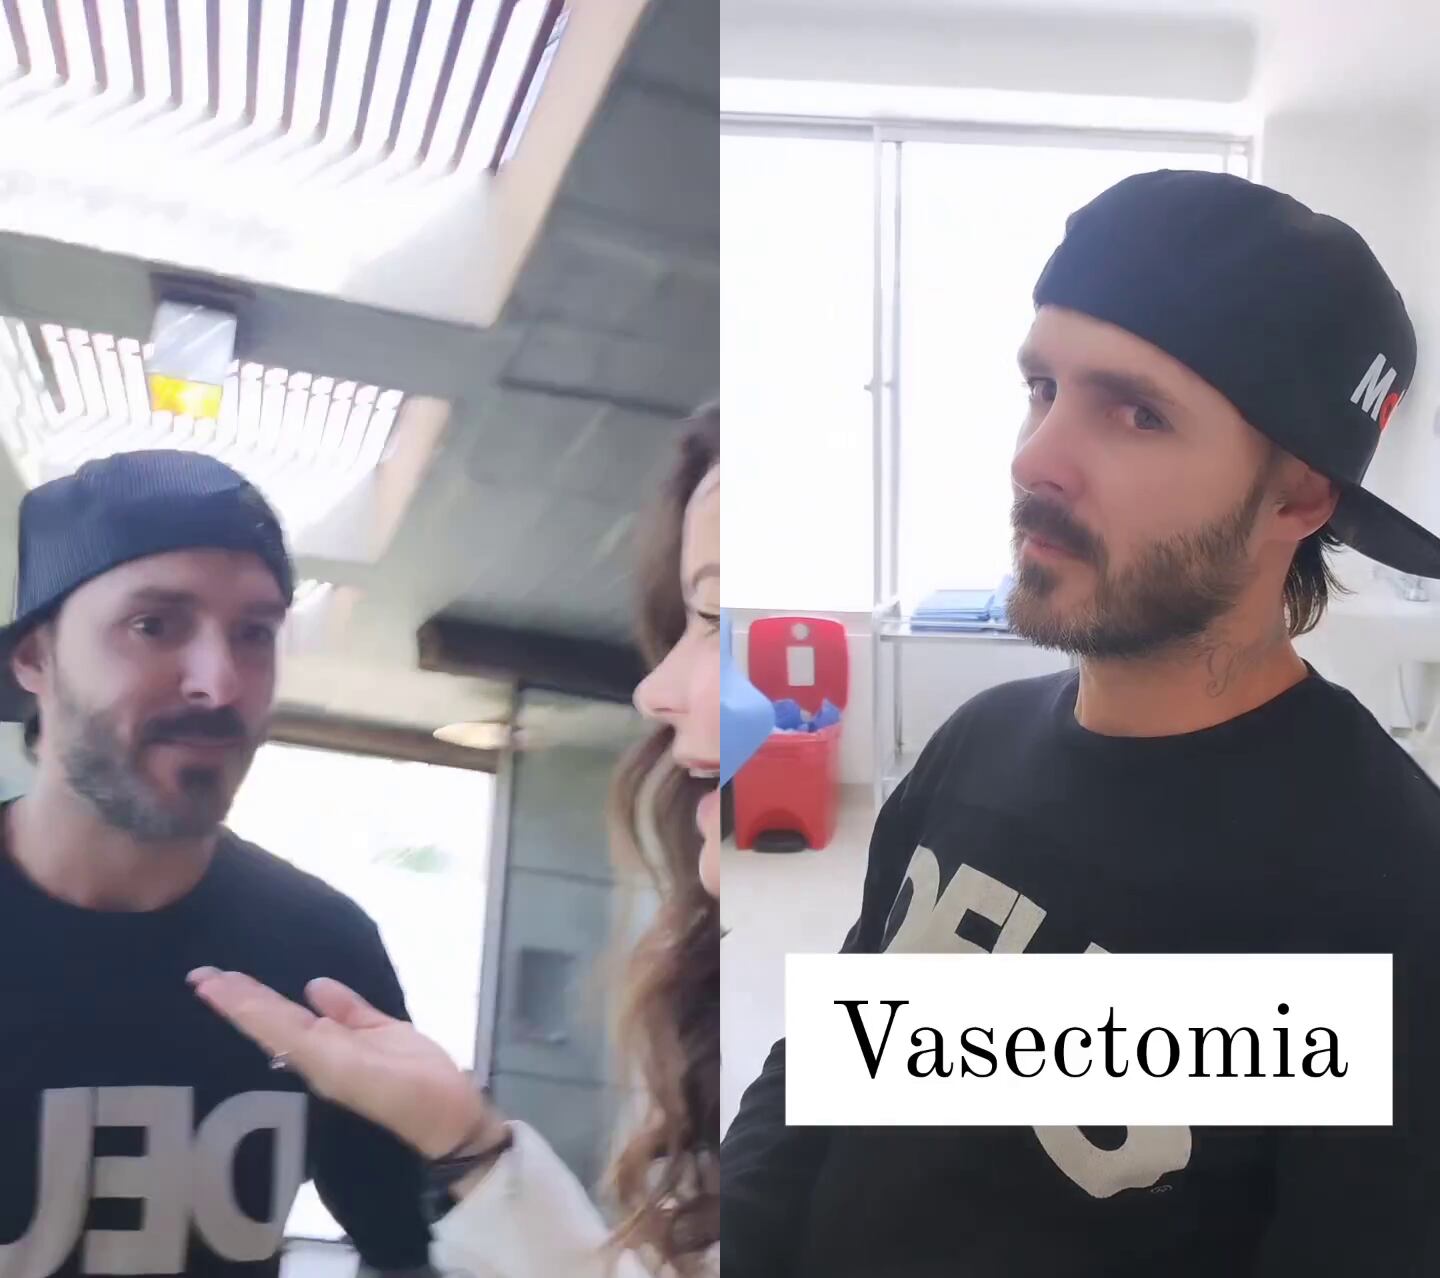 Tatán Mejía y Maleja Restrepo discutieron sobre la vasectomía y lo que implica este procedimiento